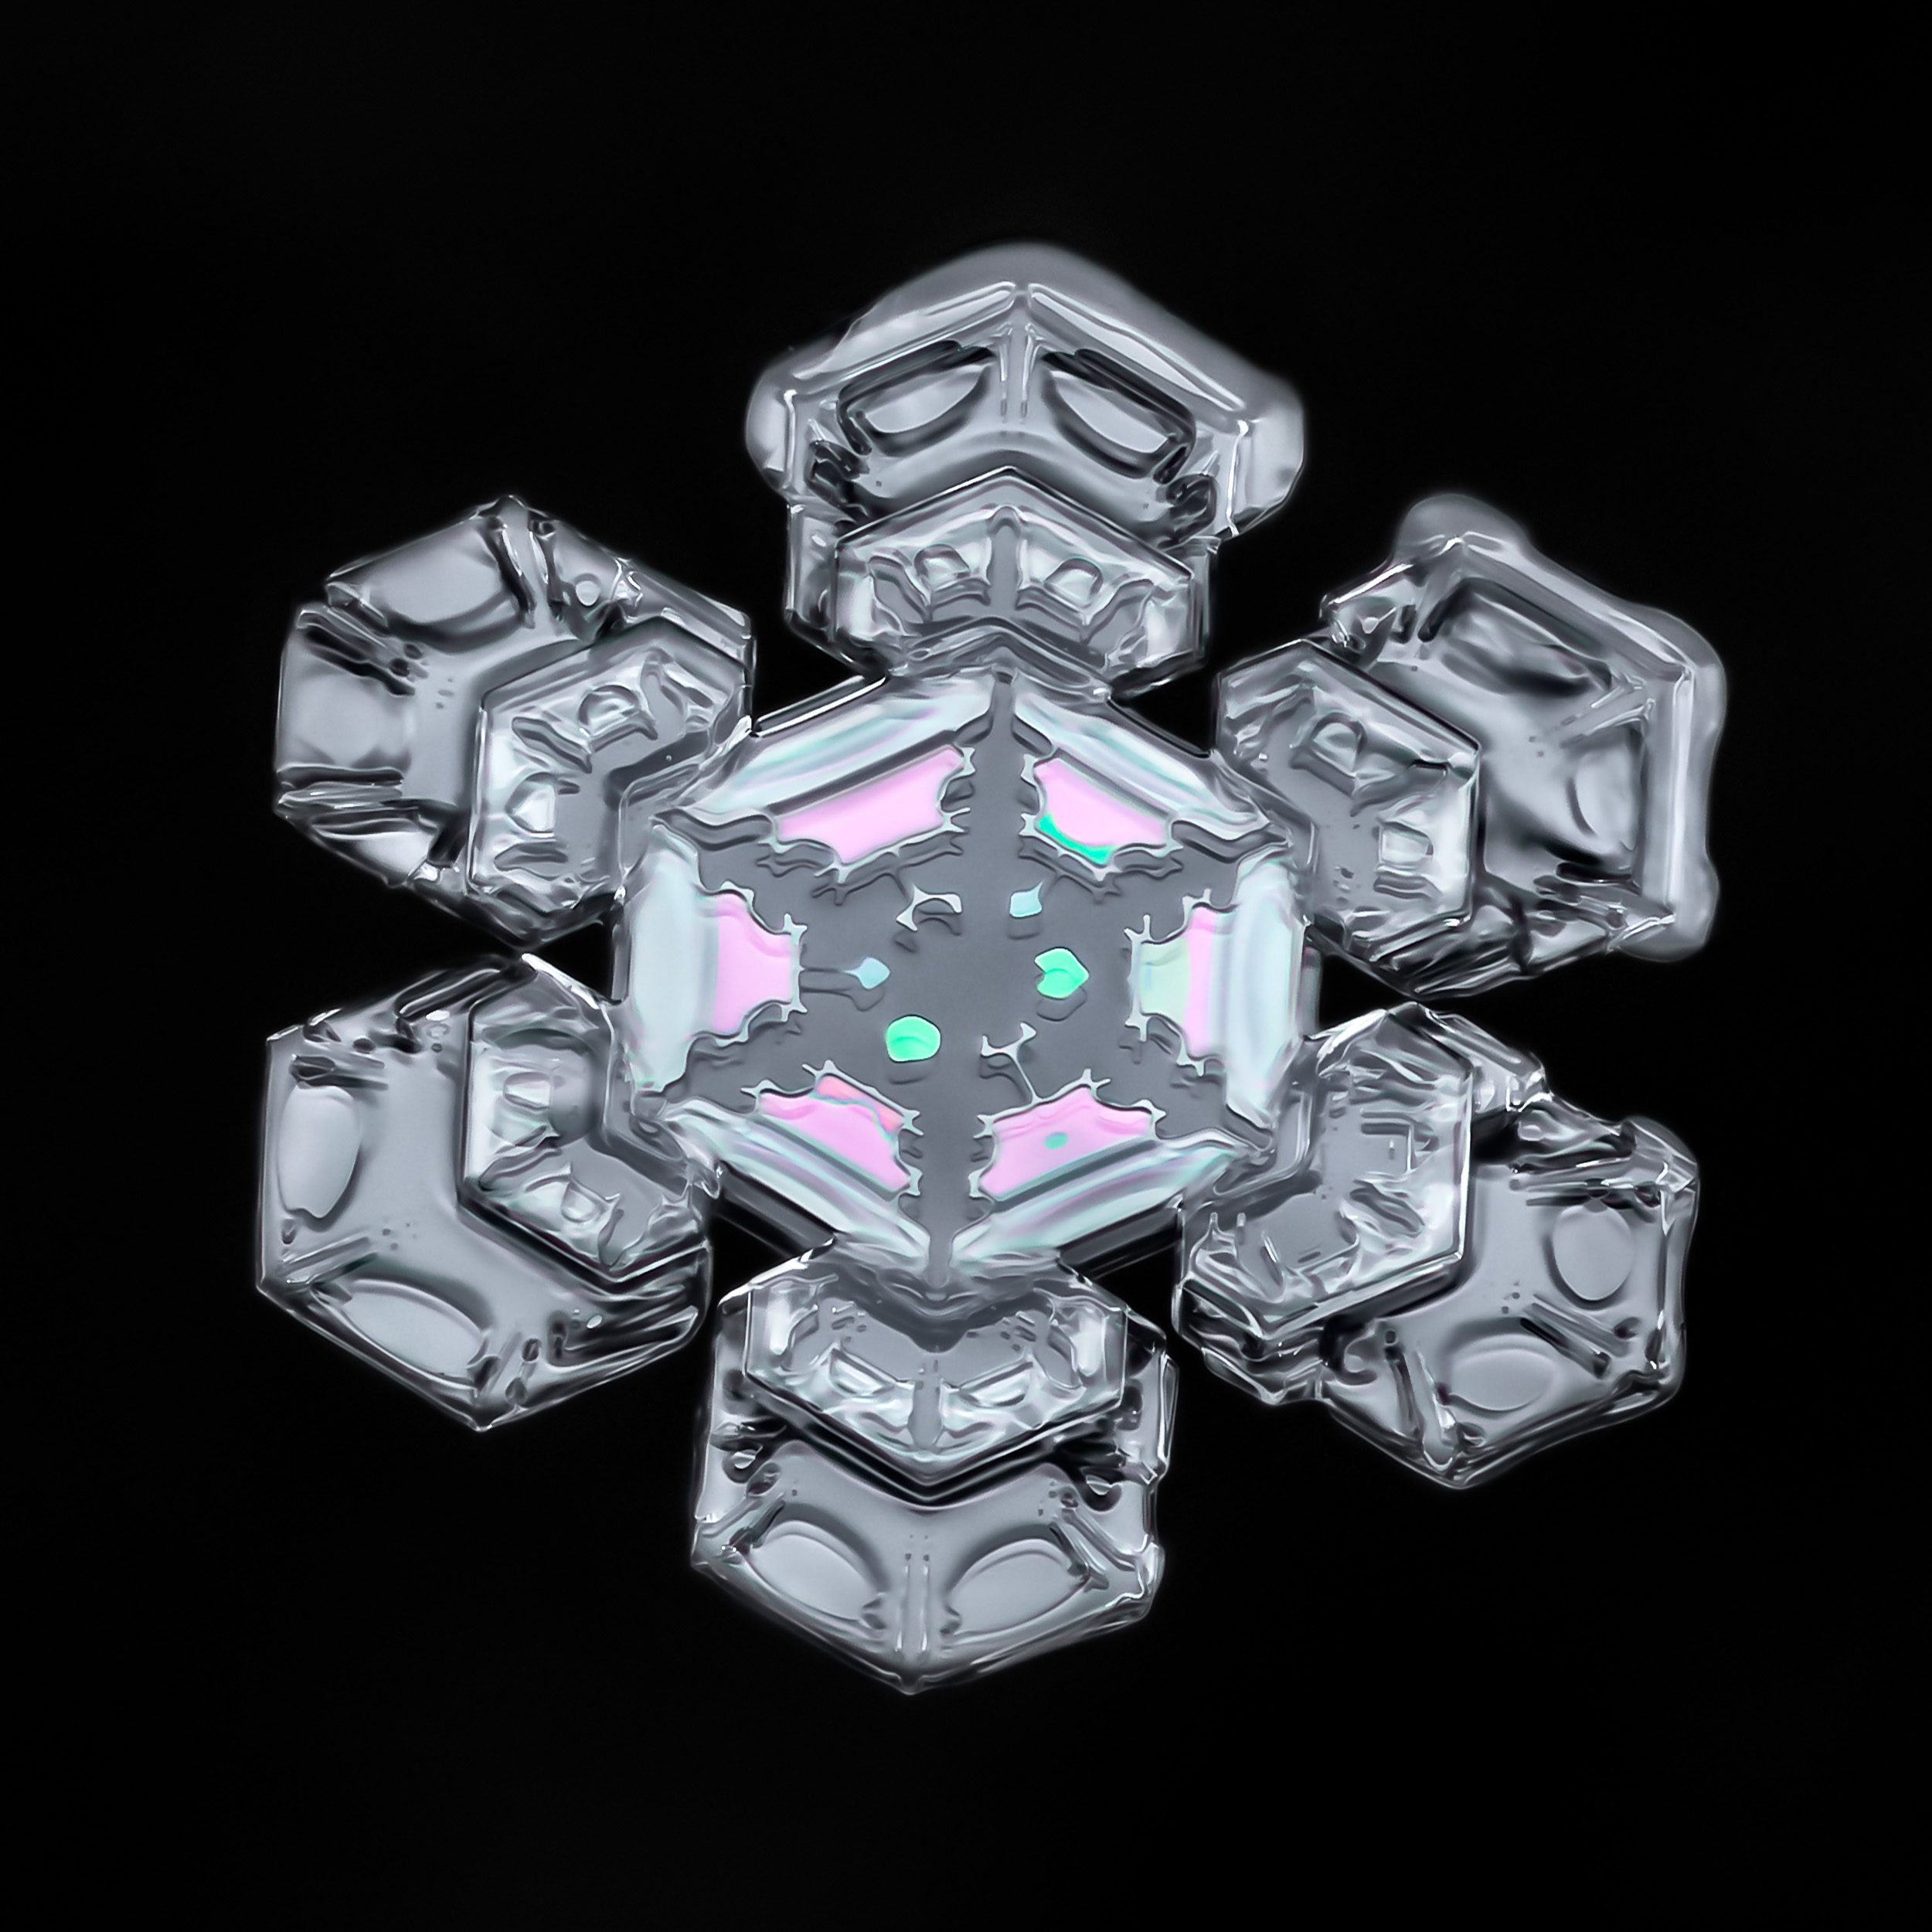 Snowflake-a-Day No. 22